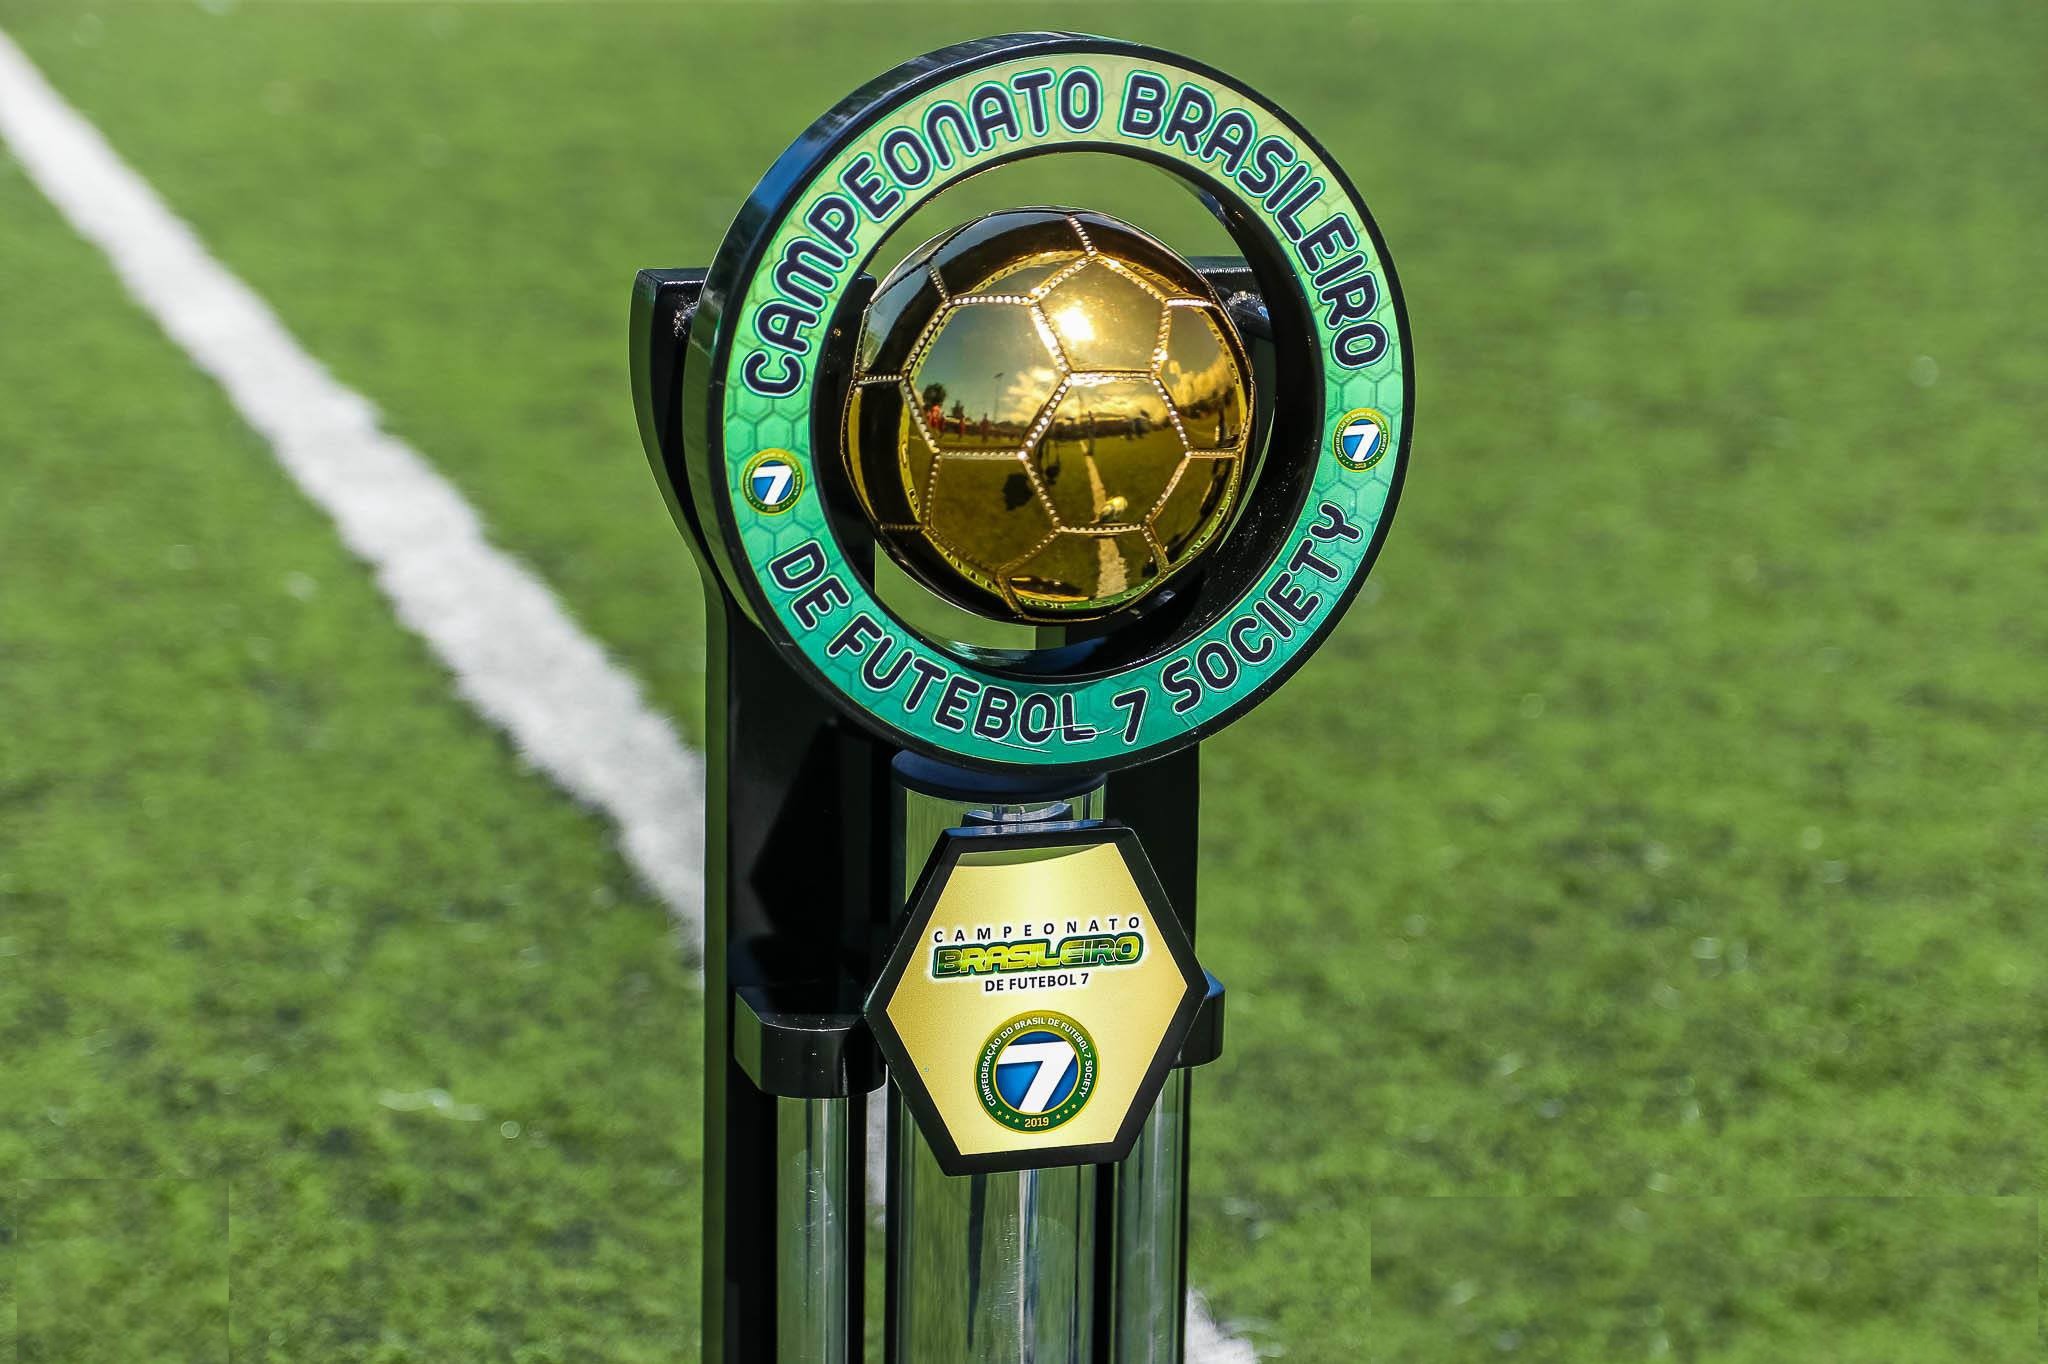 Está chegando a hora do Campeonato Brasileiro de Futebol 7 - 2021